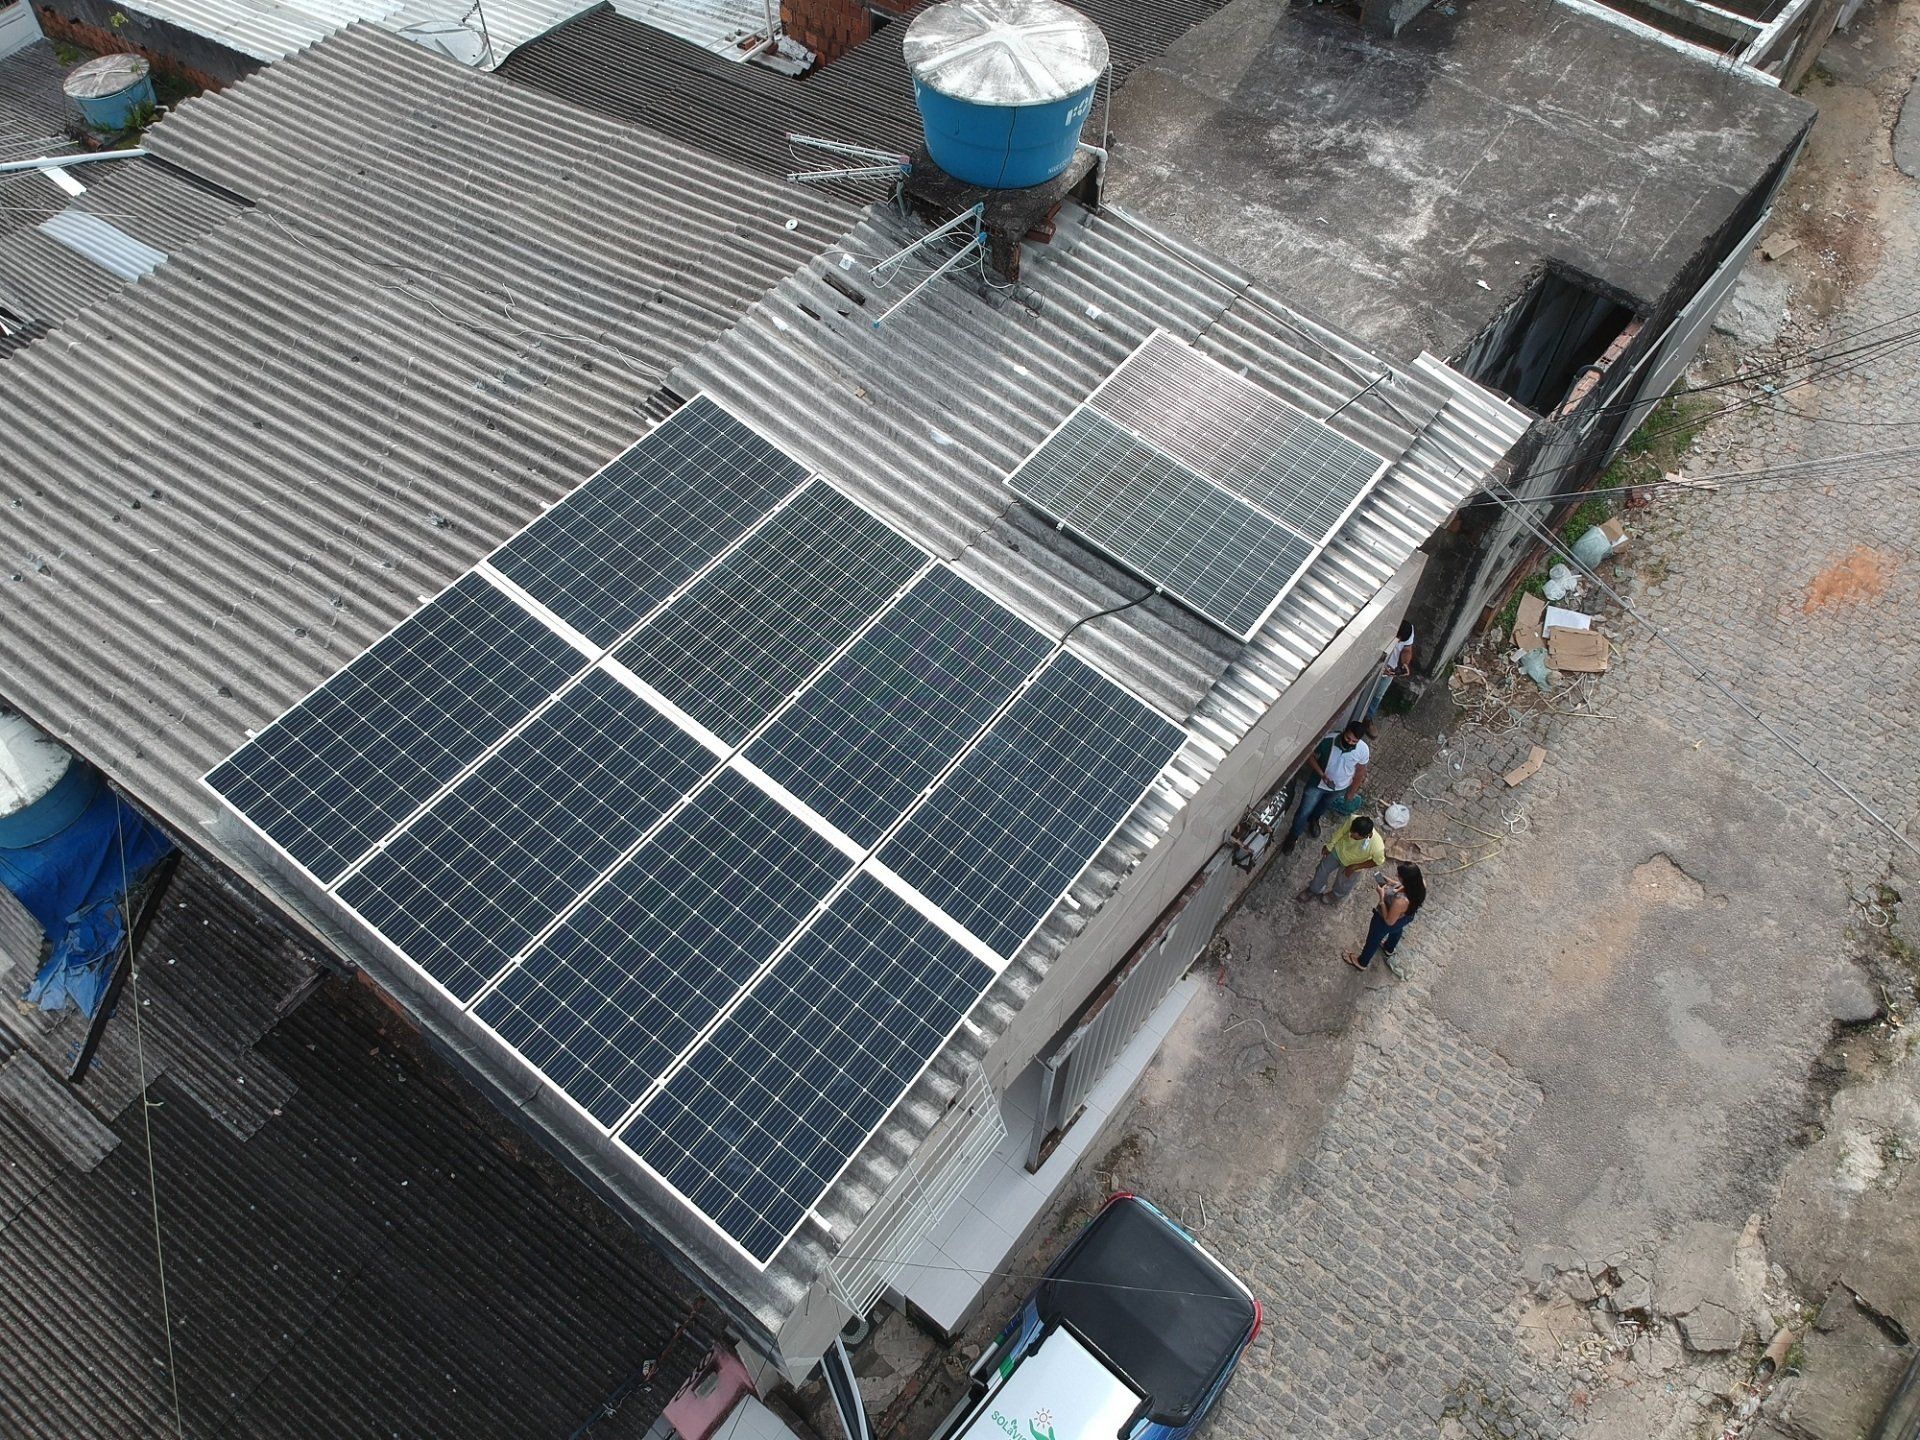 Sistema instalado no bairro de Aguas compridas, Olinda-PE. Composto por 10 módulos Solar Fotovoltaico de potência 375Wp e Micro inversor. Com plataforma para monitoramento Online nivel módulo a módulo.